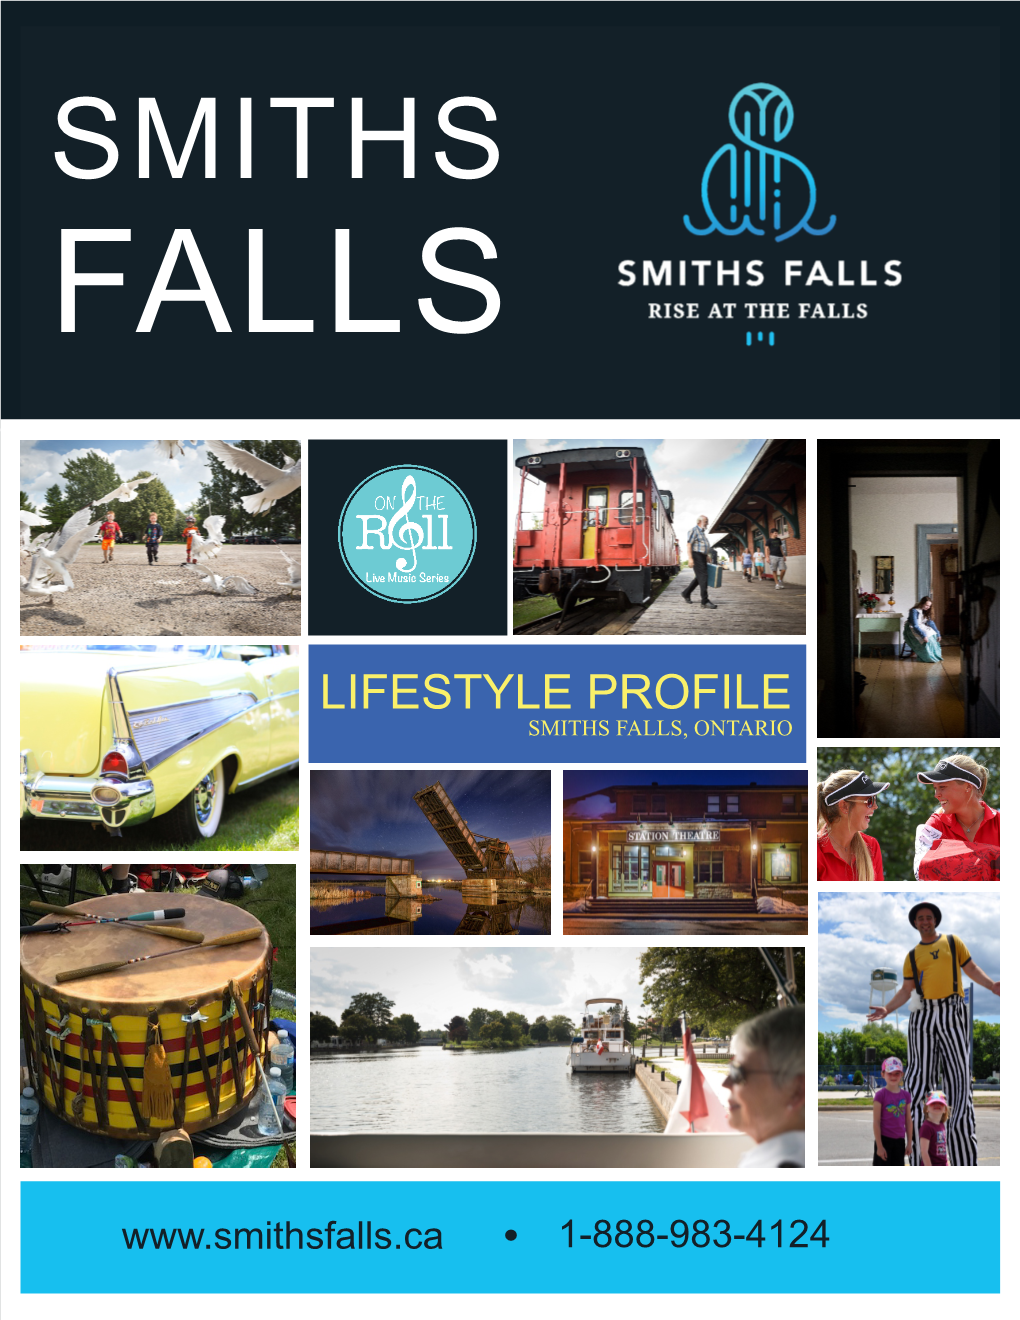 Lifestyle Profile Smiths Falls, Ontario